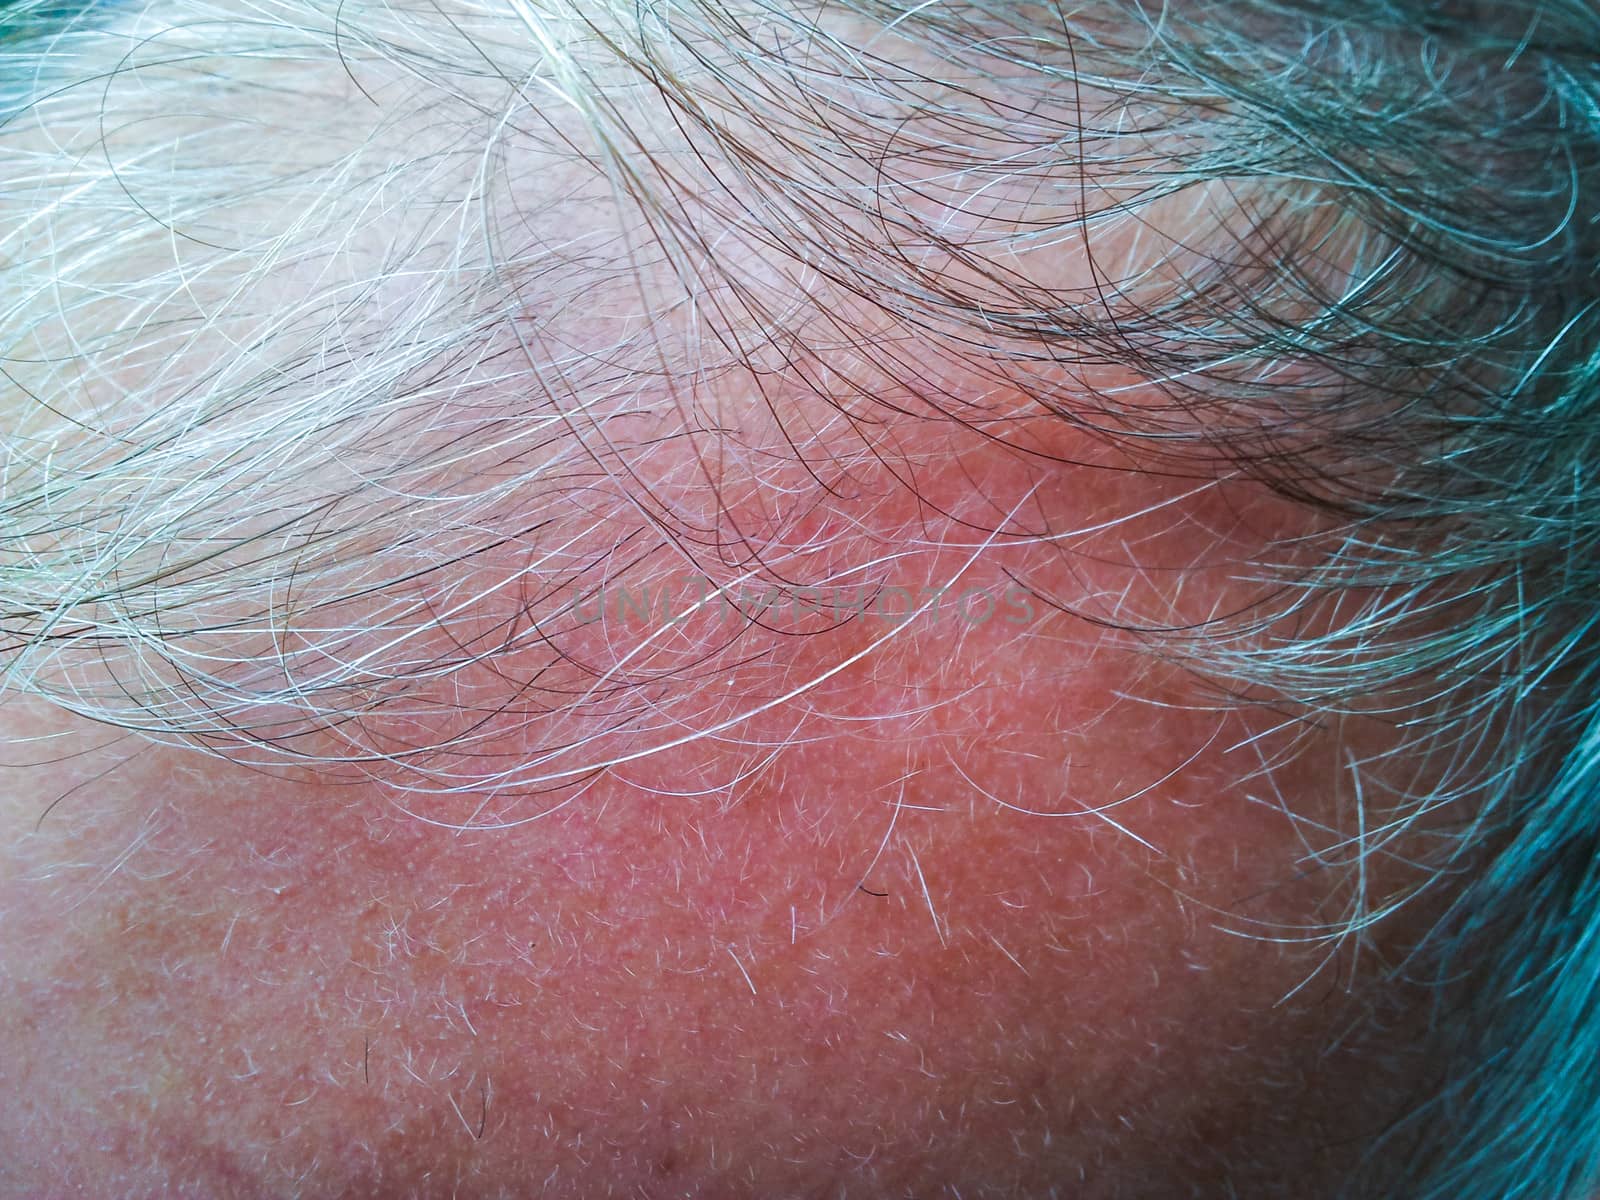 Grey hair, balding by Arvebettum